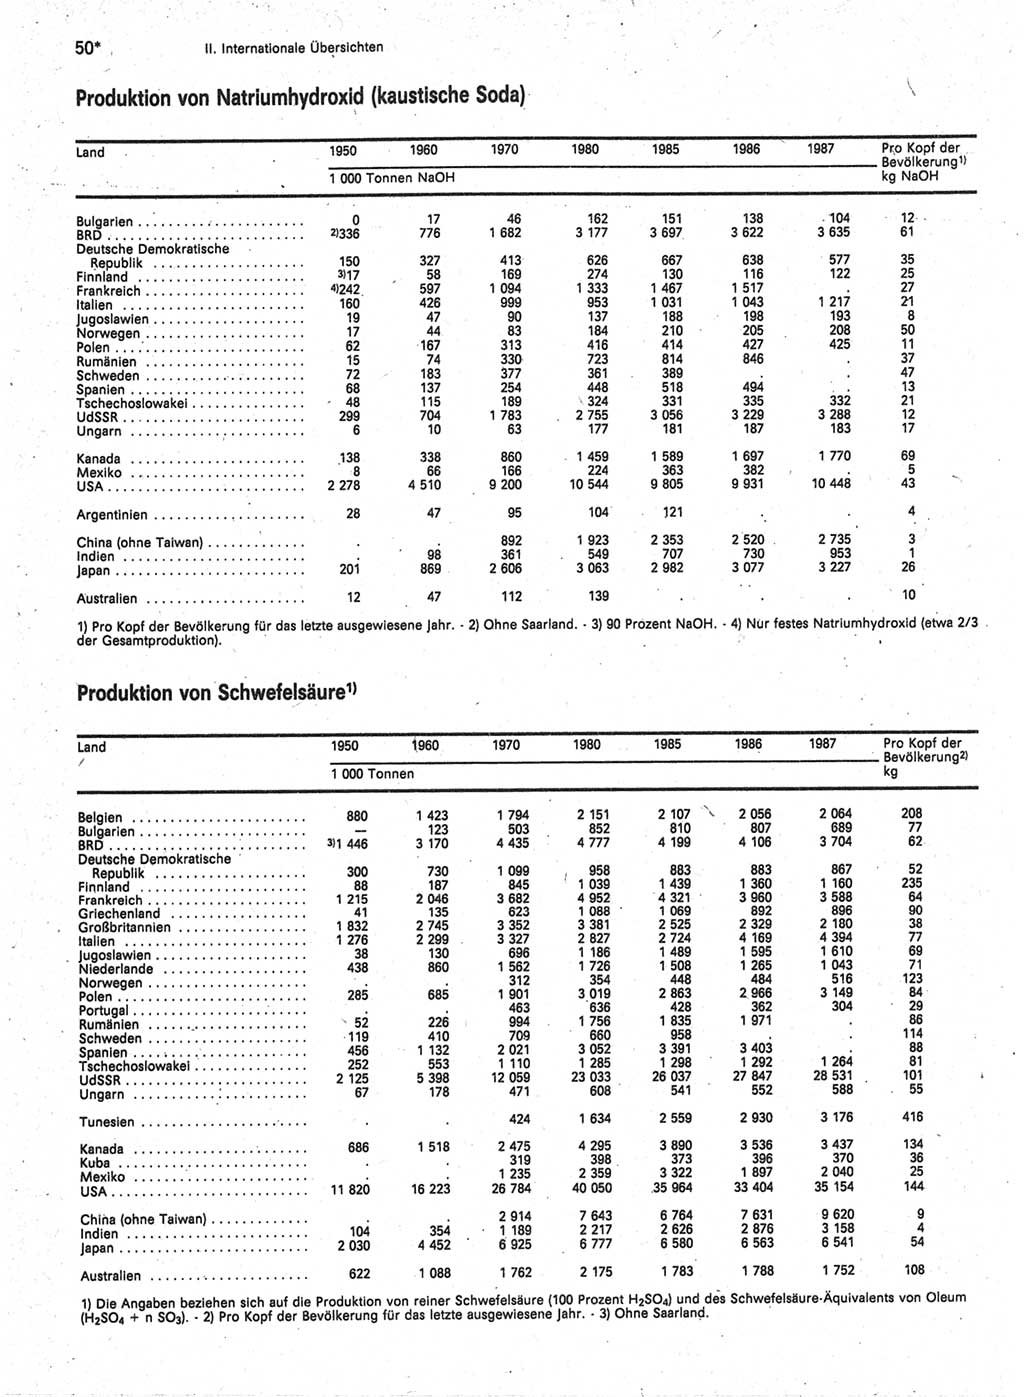 Statistisches Jahrbuch der Deutschen Demokratischen Republik (DDR) 1989, Seite 50 (Stat. Jb. DDR 1989, S. 50)